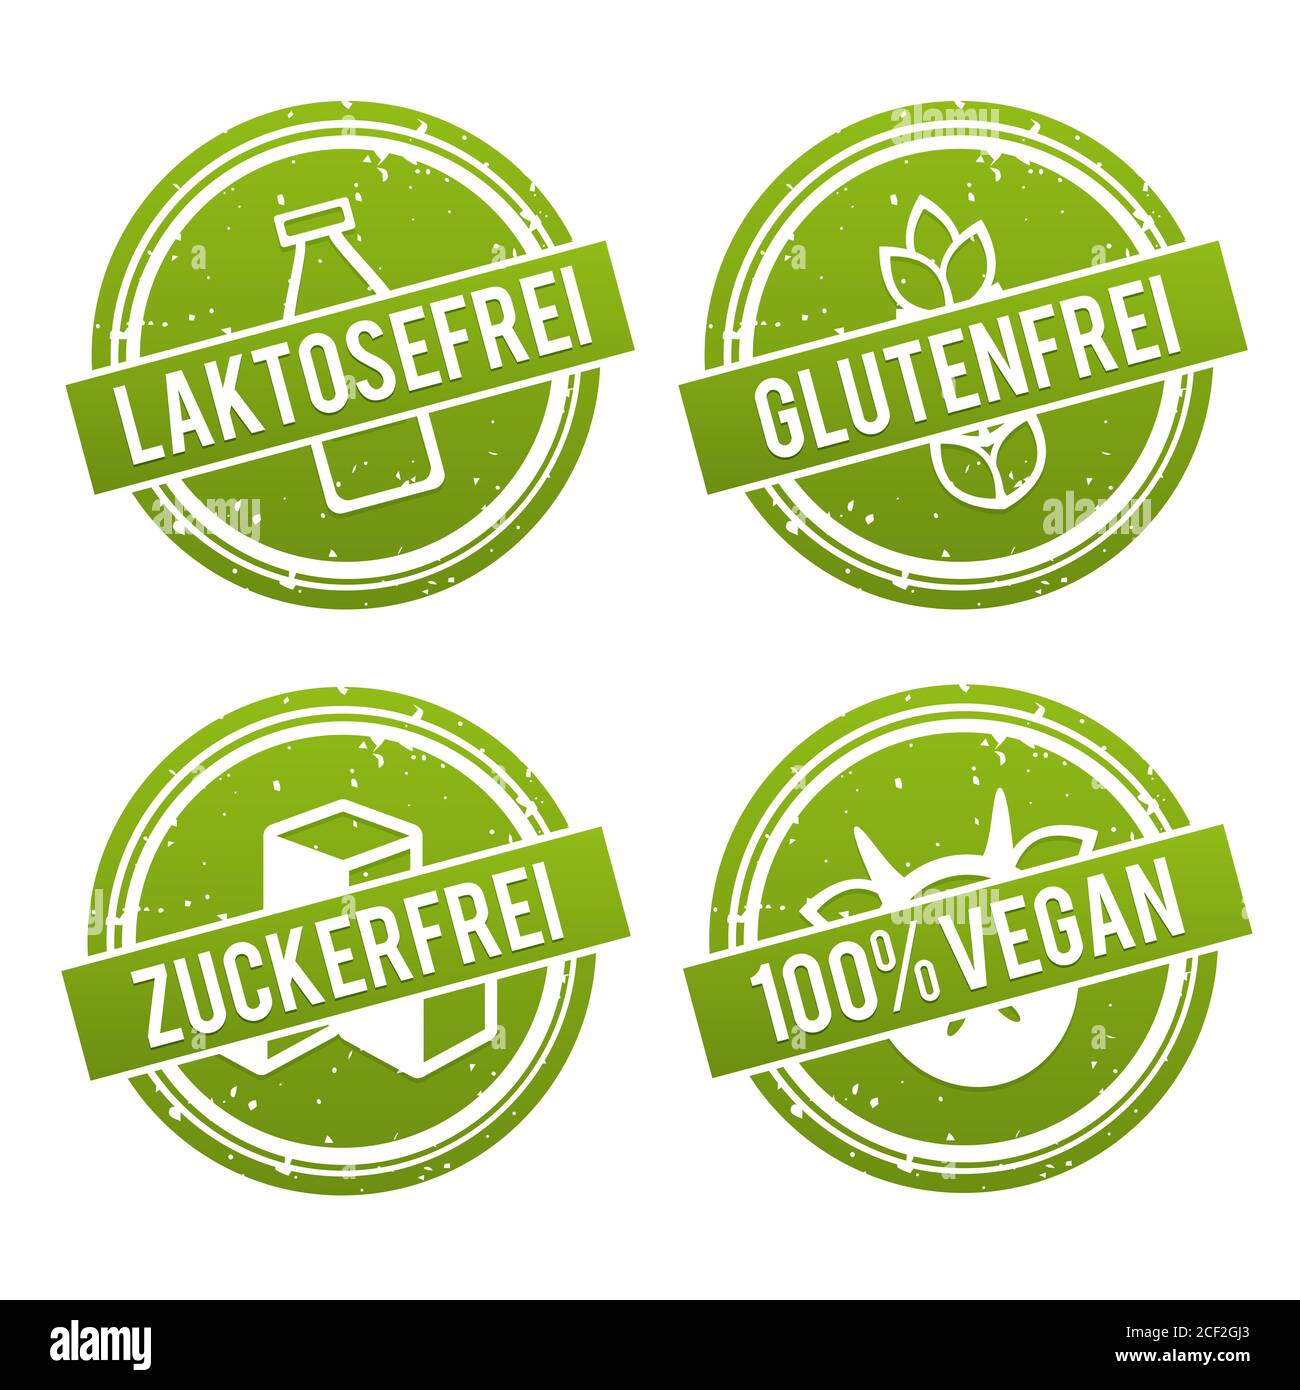 Vektor Symbole Vegan, Glutenfrei, Laktosefrei und Zuckerfrei. Stock Photo